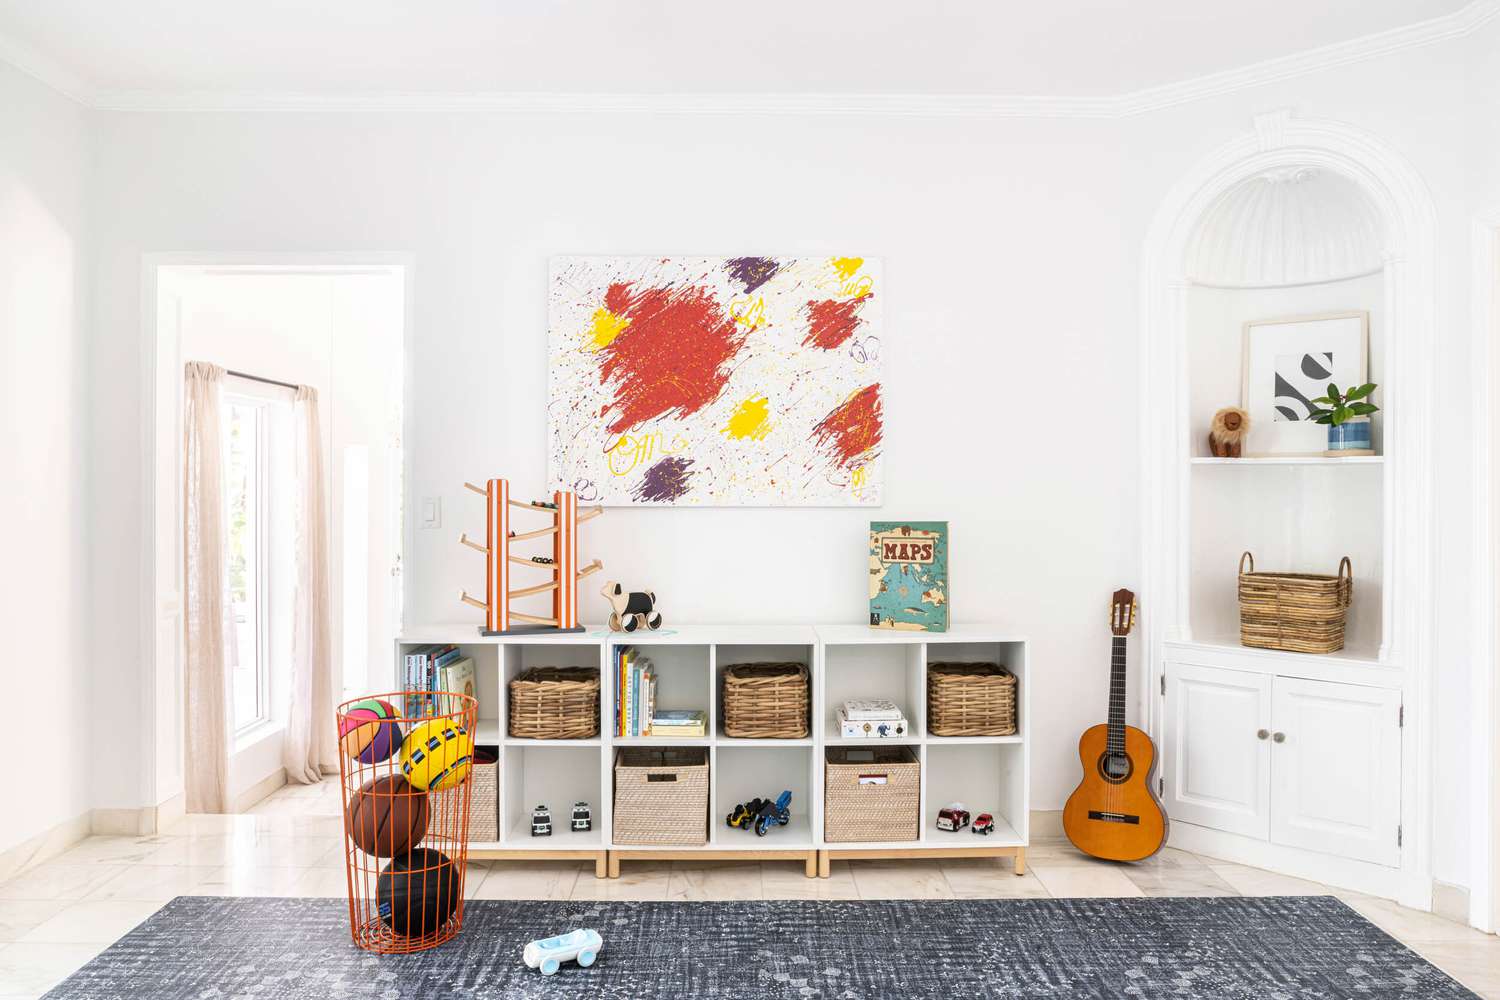 Cubbie-style playroom storage